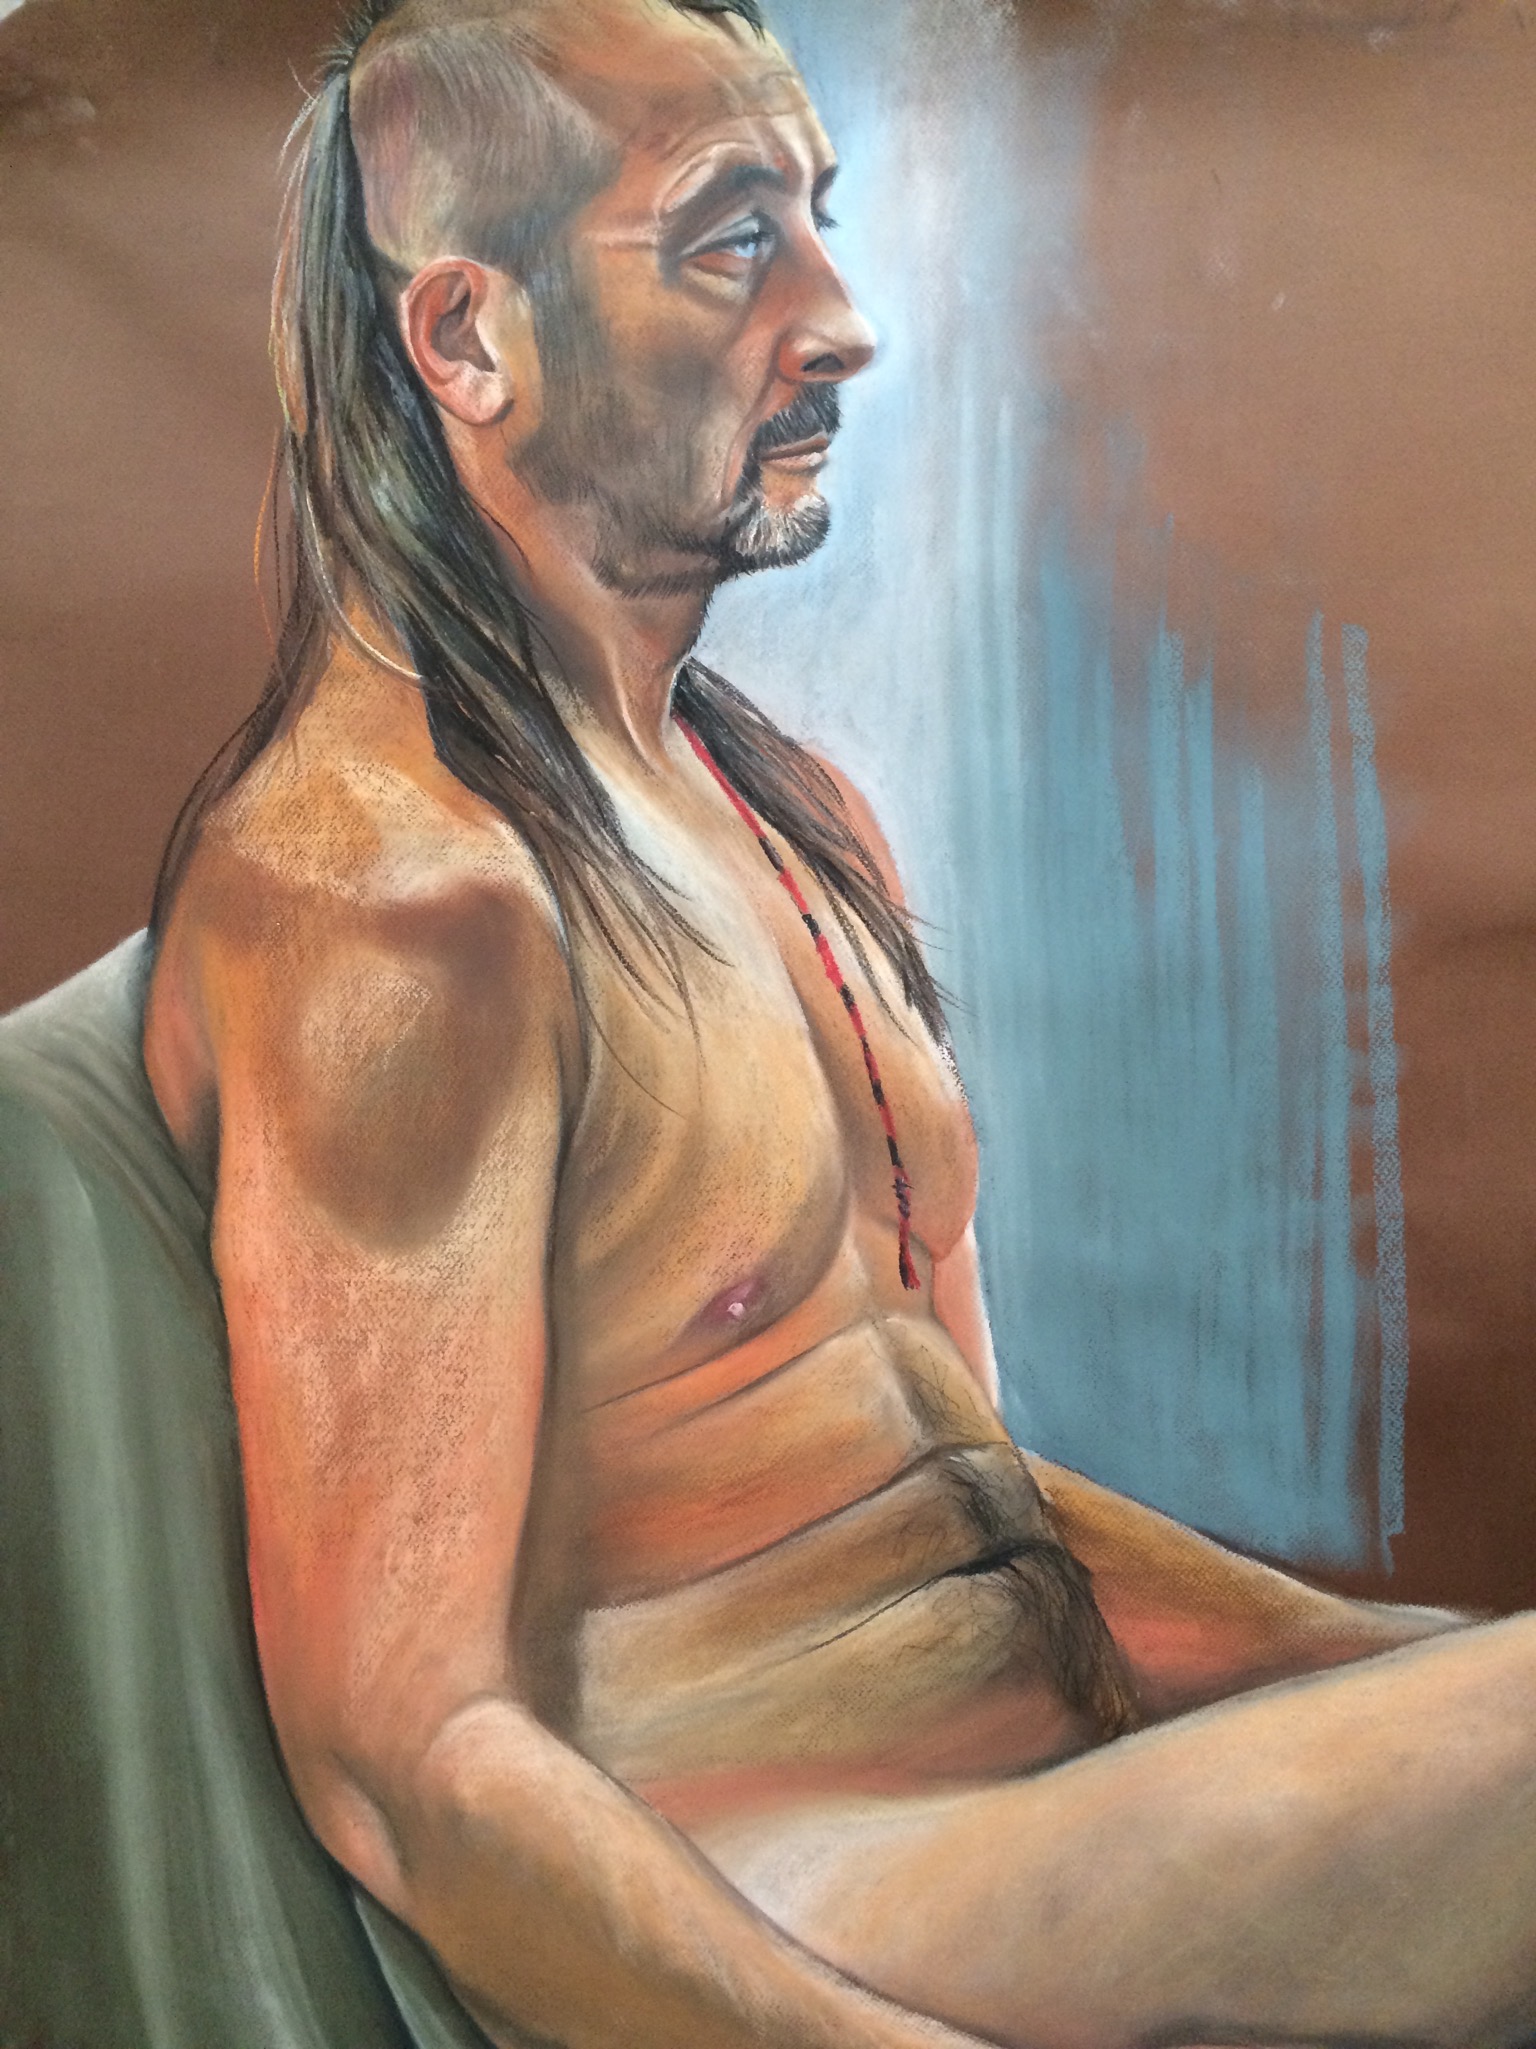 Simon, Biker, 47. Pastel 120 x 180 cms